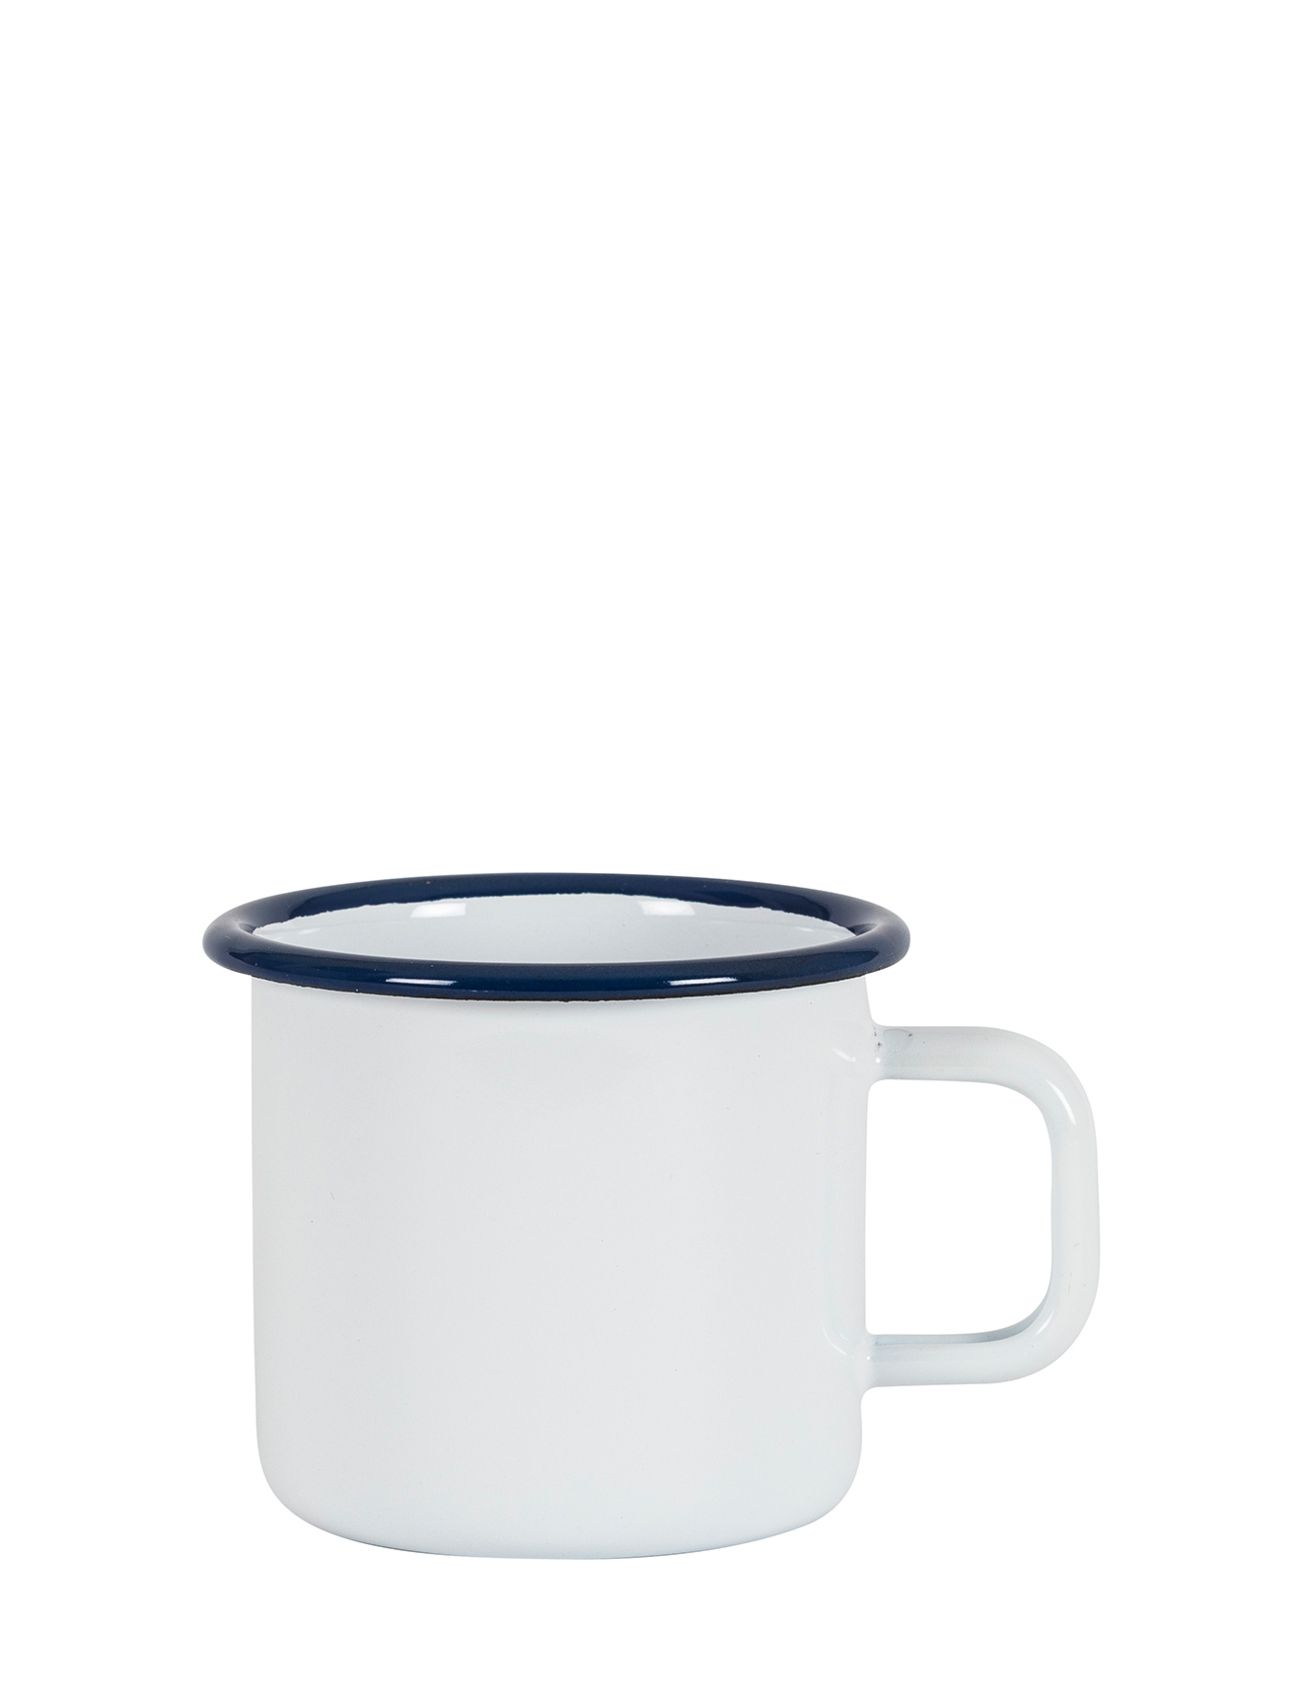 Kockums Jernverk Mug Home Tableware Cups & Mugs Tea Cups Hvit Kockums Jernverk